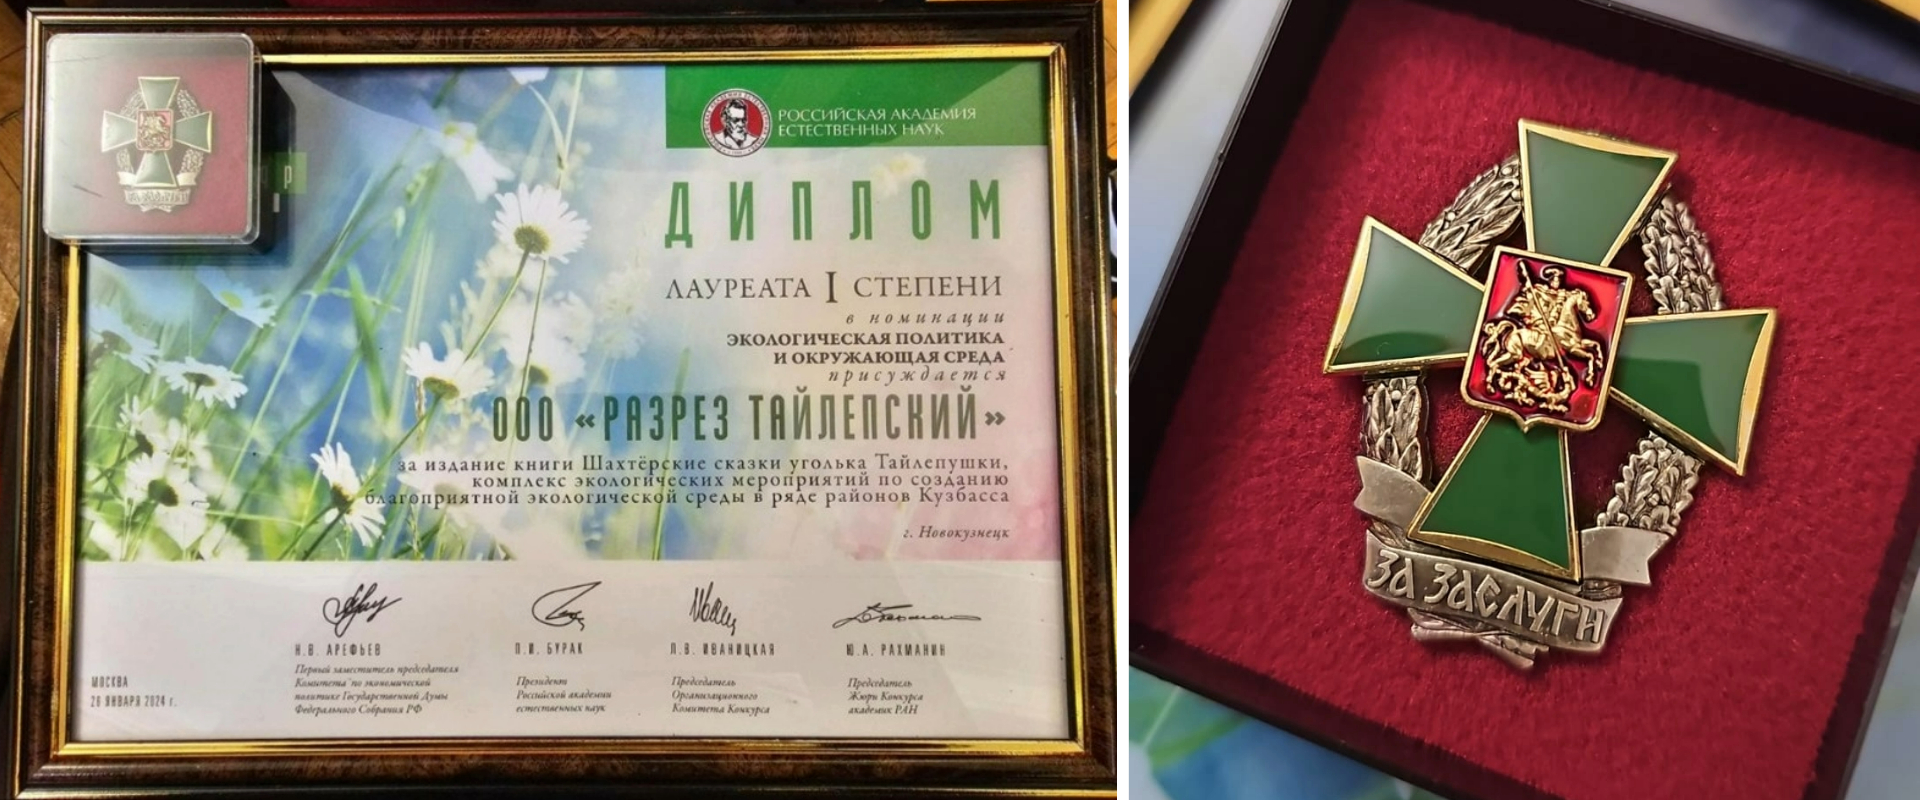 ООО «Разрез Тайлепский» получил звание лауреата I степени  Международной экологической премии «ЭкоМир-2023»